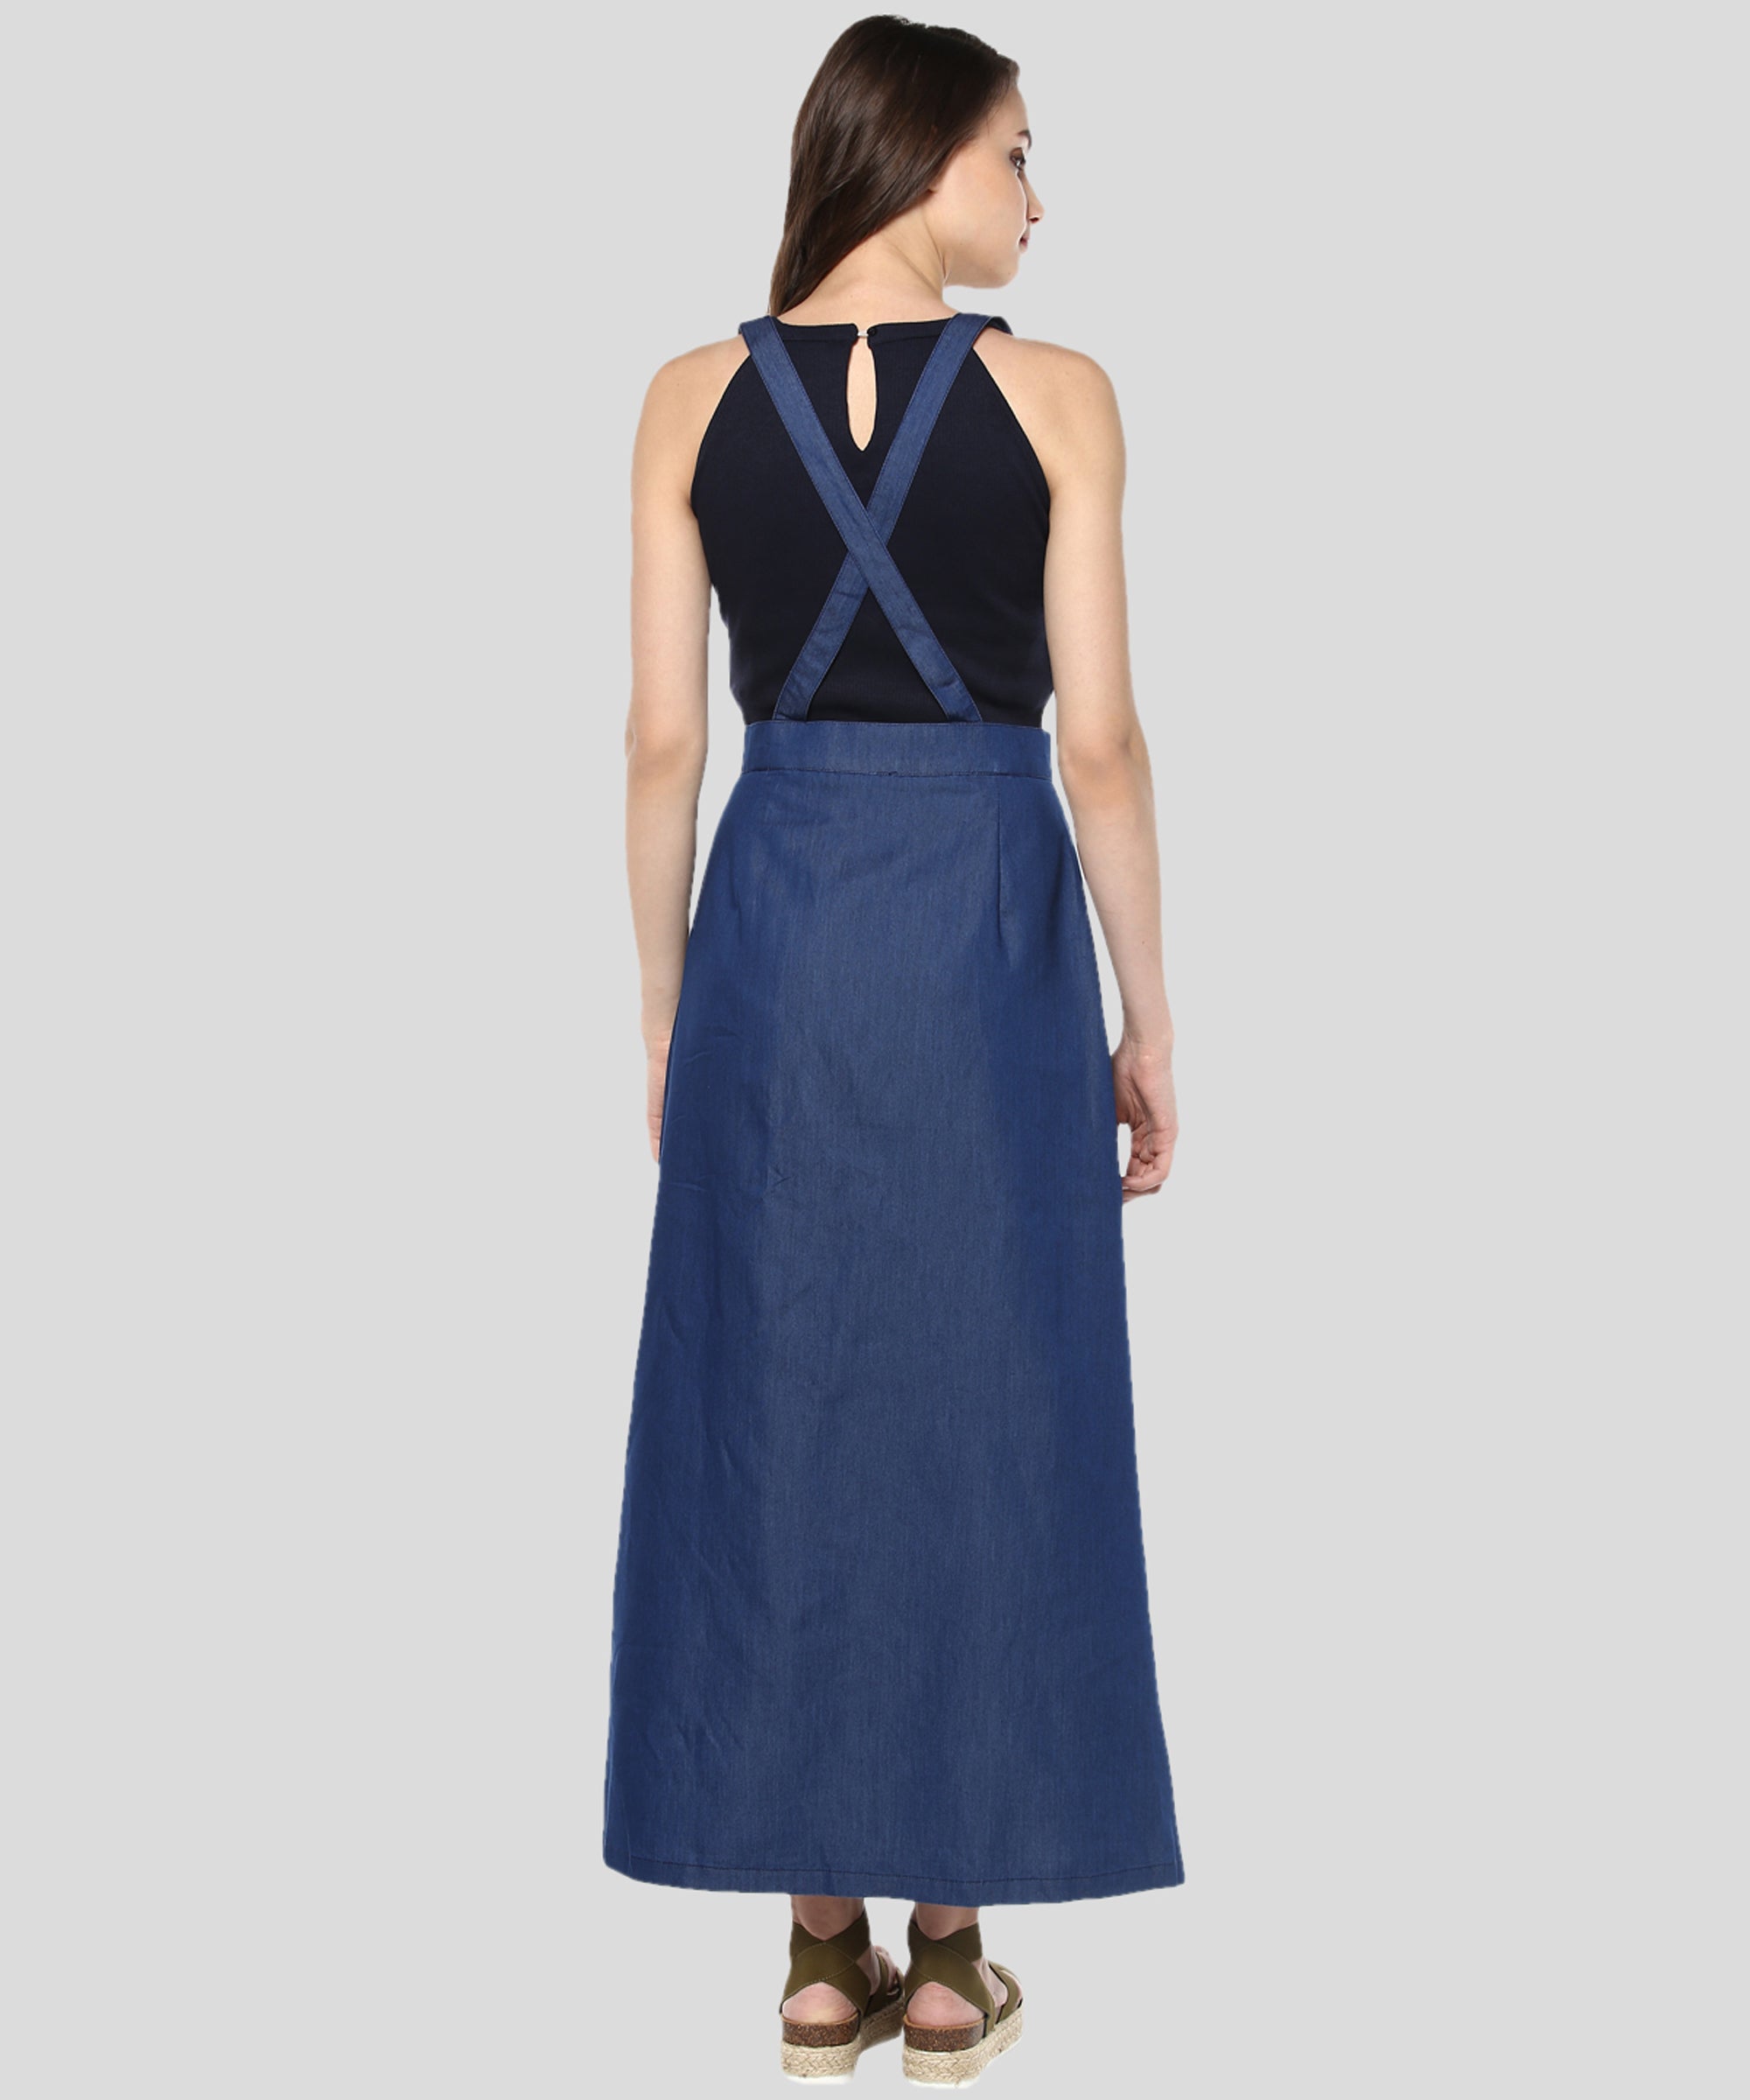 Women's Denim Pinafore Skirt Dress - StyleStone